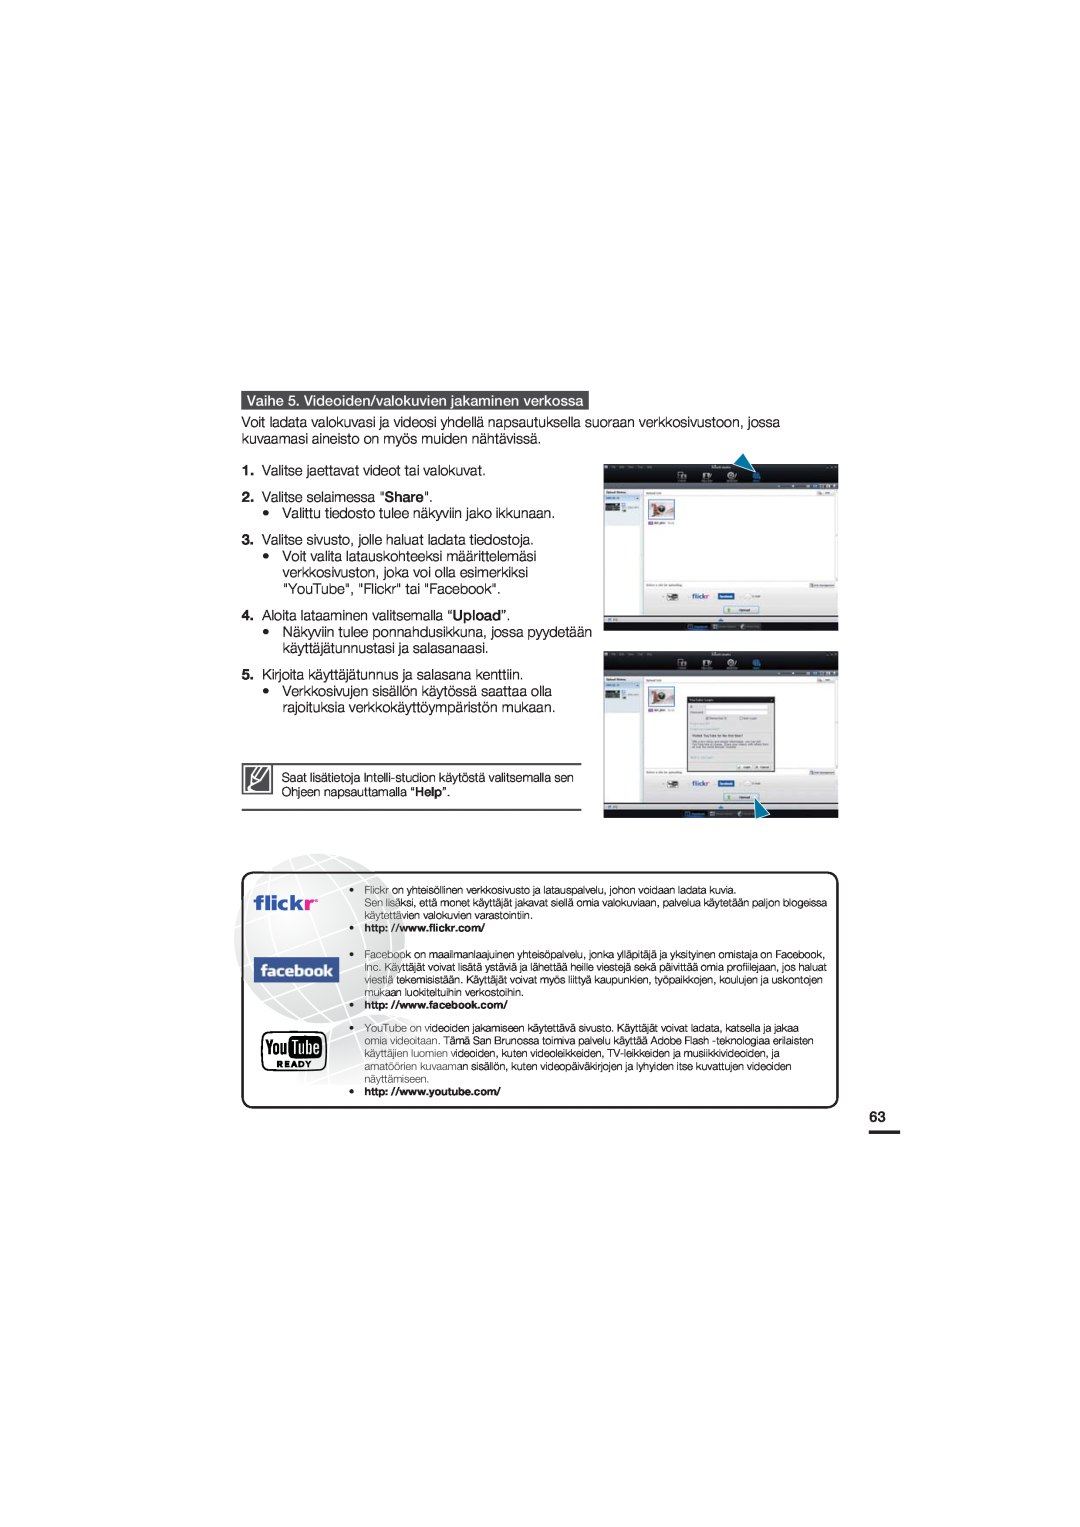 Samsung HMX-U20BP/EDC Vaihe 5. Videoiden/valokuvien jakaminen verkossa, Valittu tiedosto tulee näkyviin jako ikkunaan 